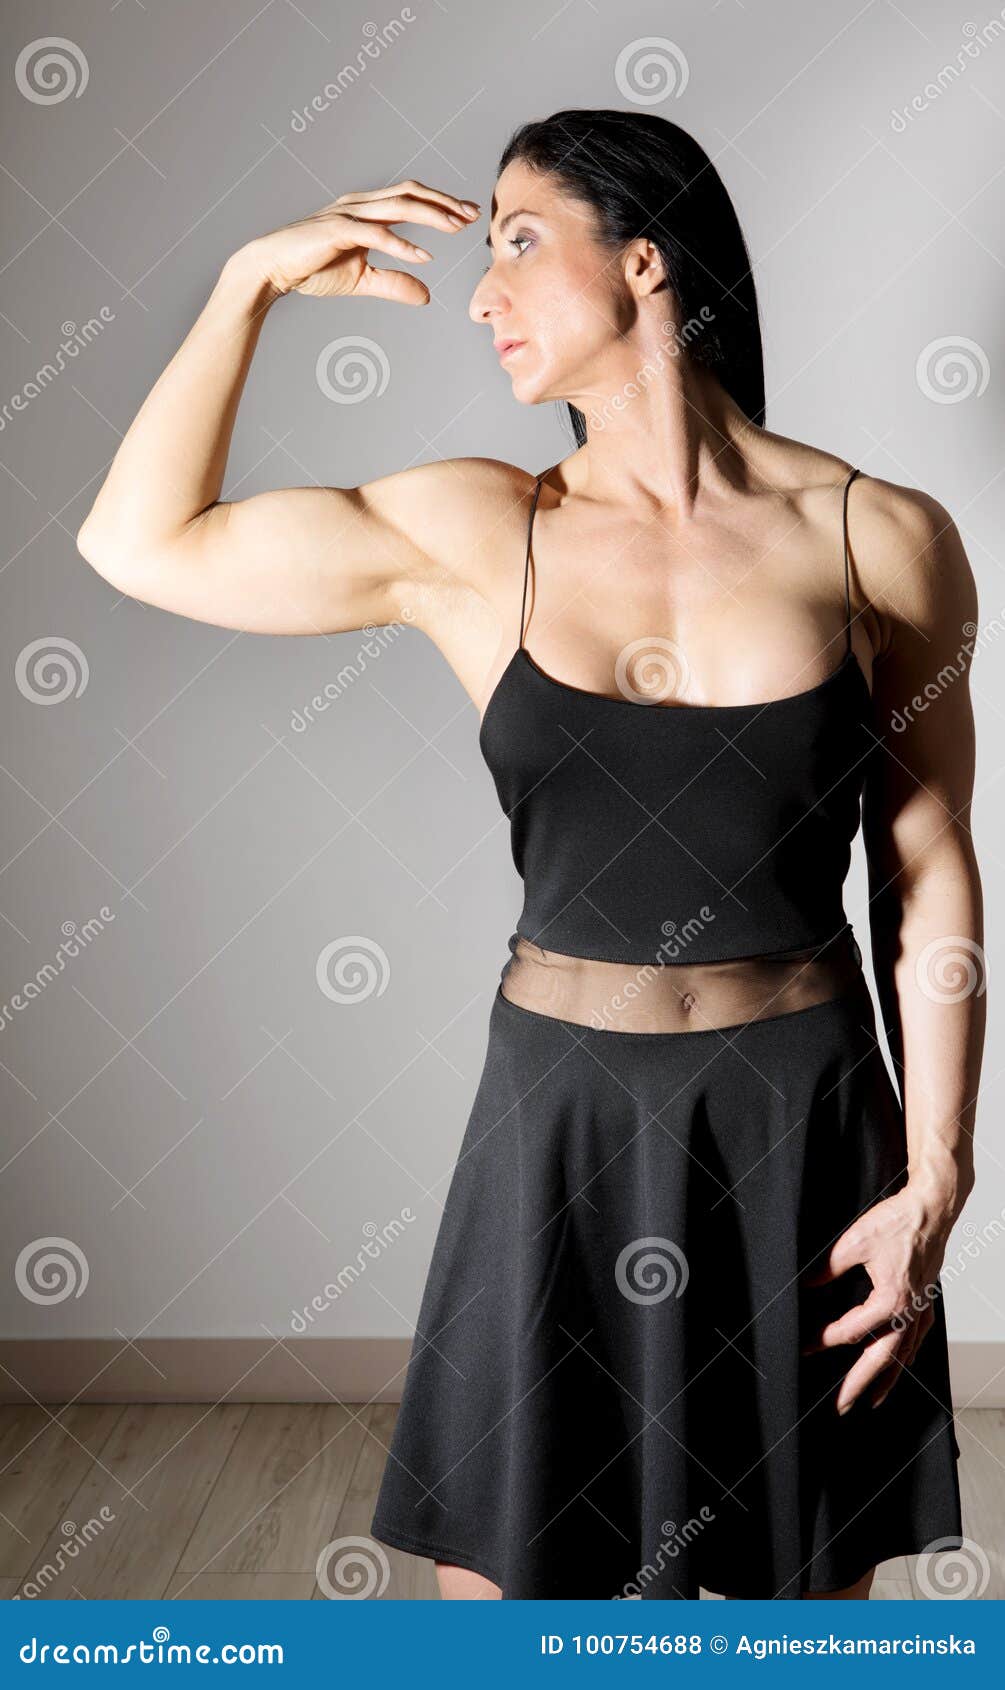 muscle woman in dress